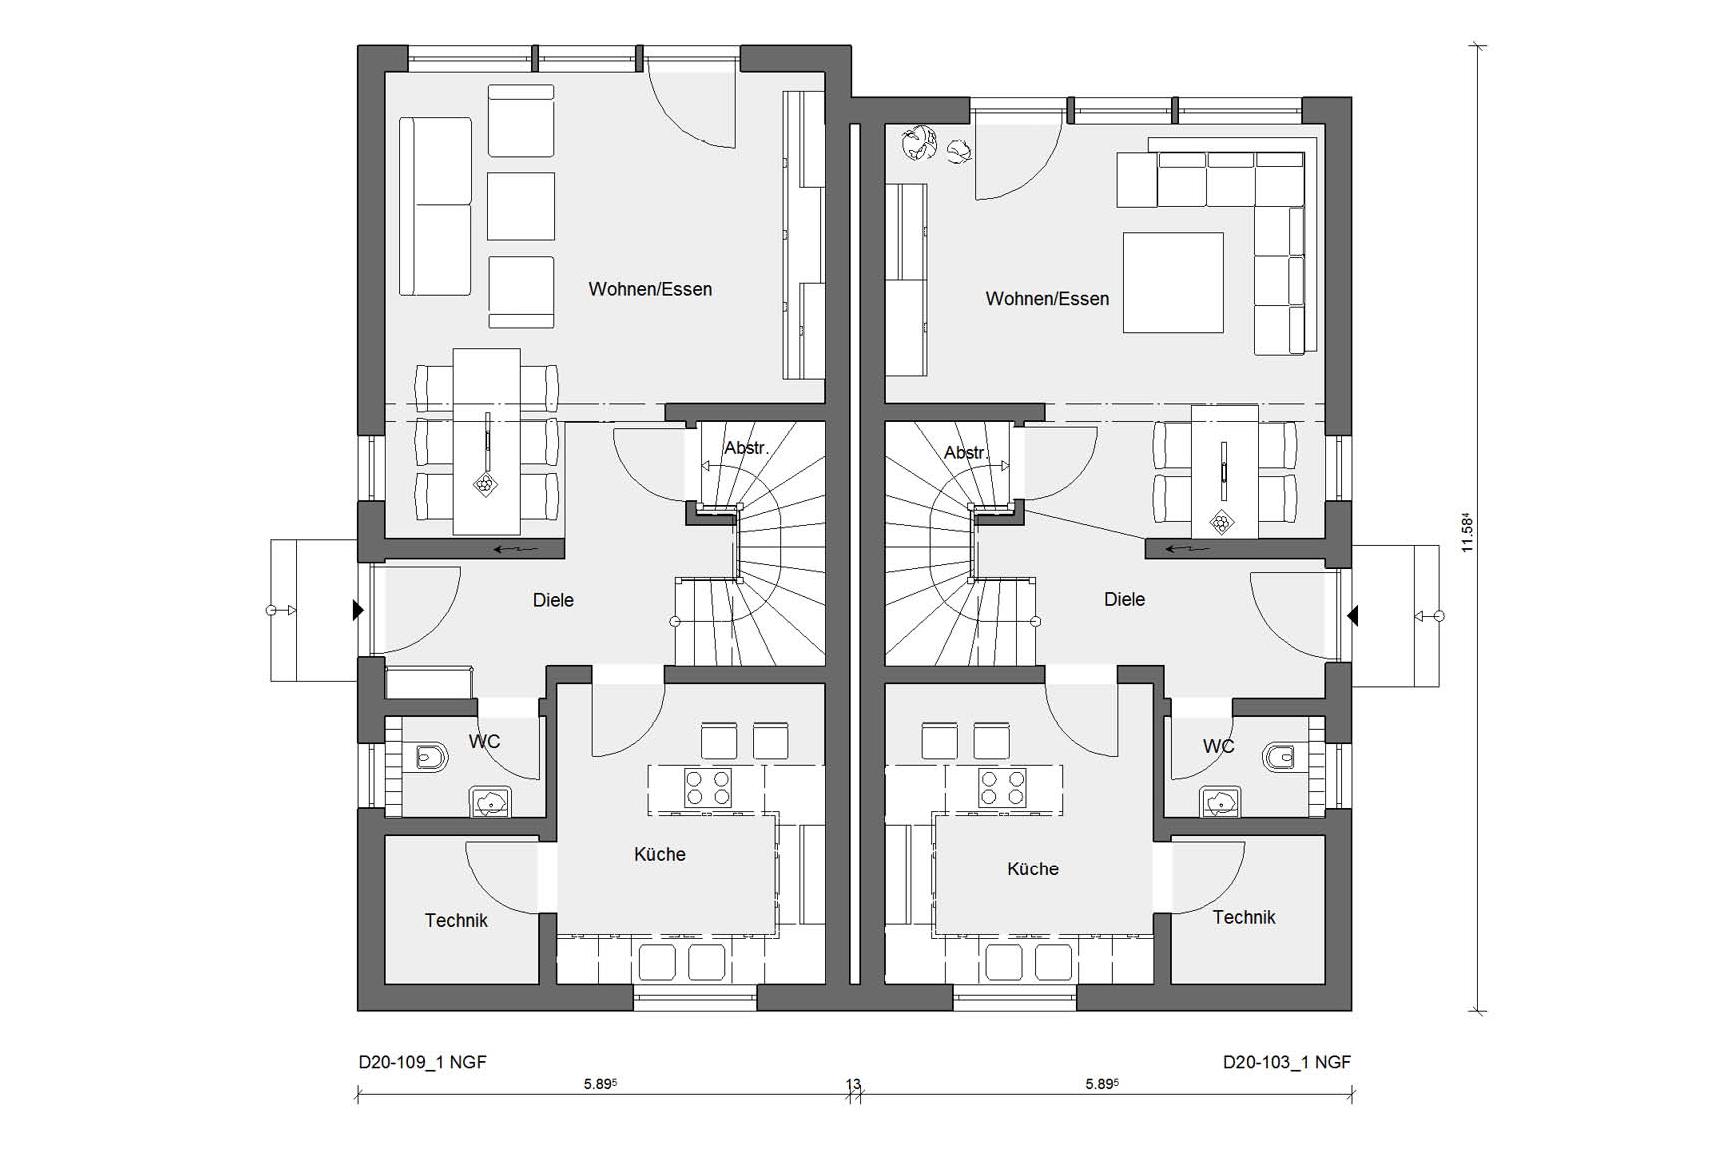 Ground floor plan D 20-109.1 / D 20-103.1 Offset semi-detached house